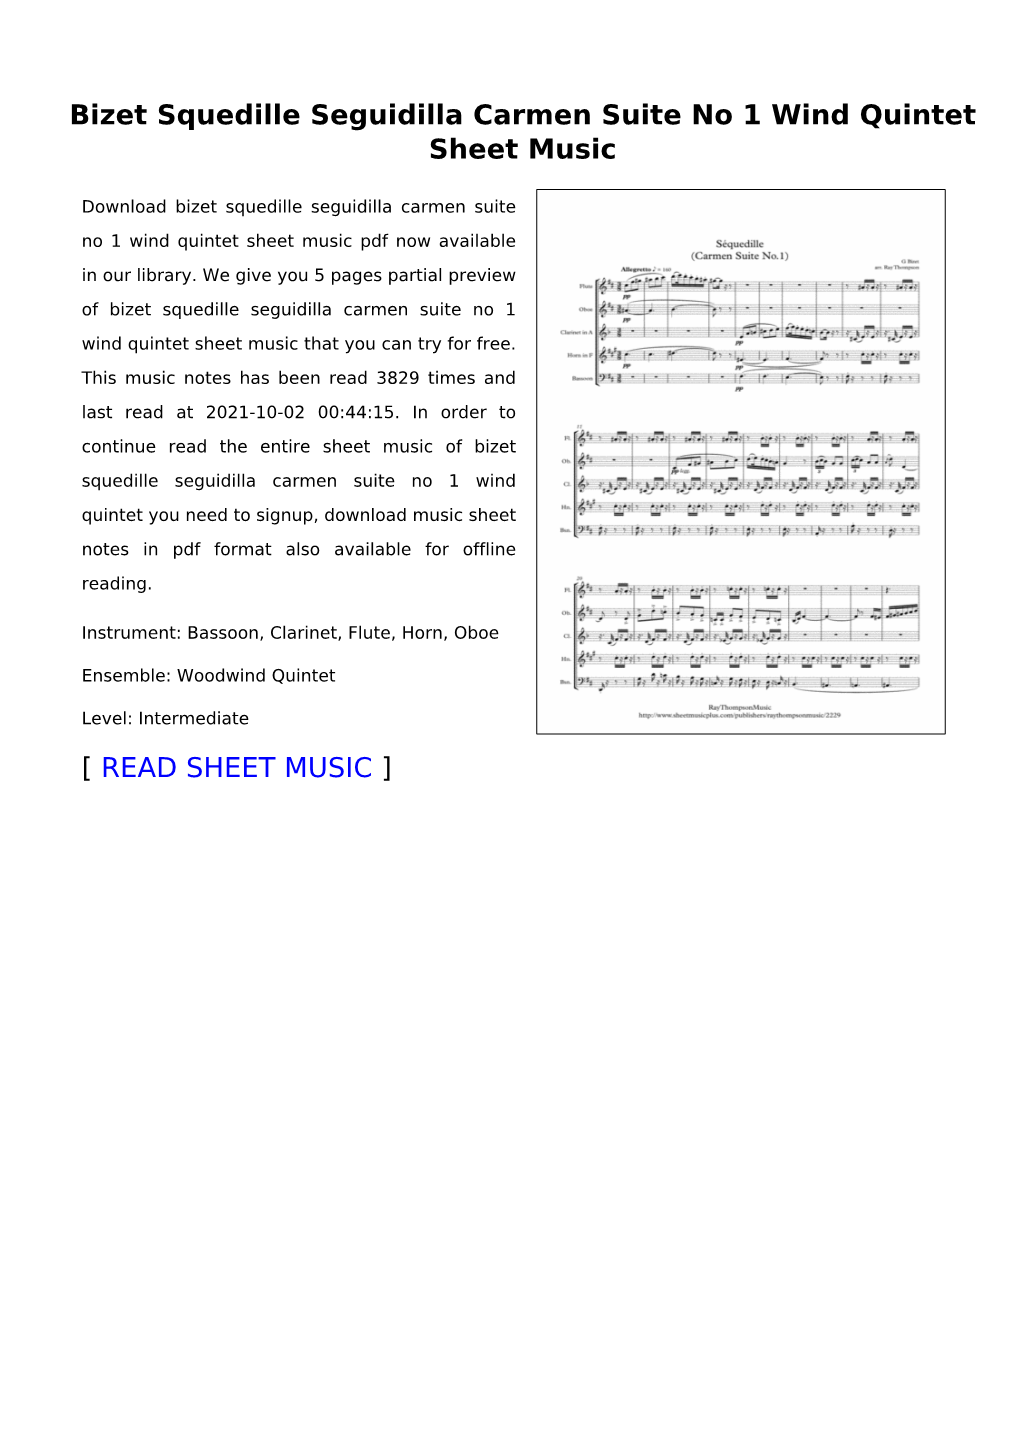 Bizet Squedille Seguidilla Carmen Suite No 1 Wind Quintet Sheet Music